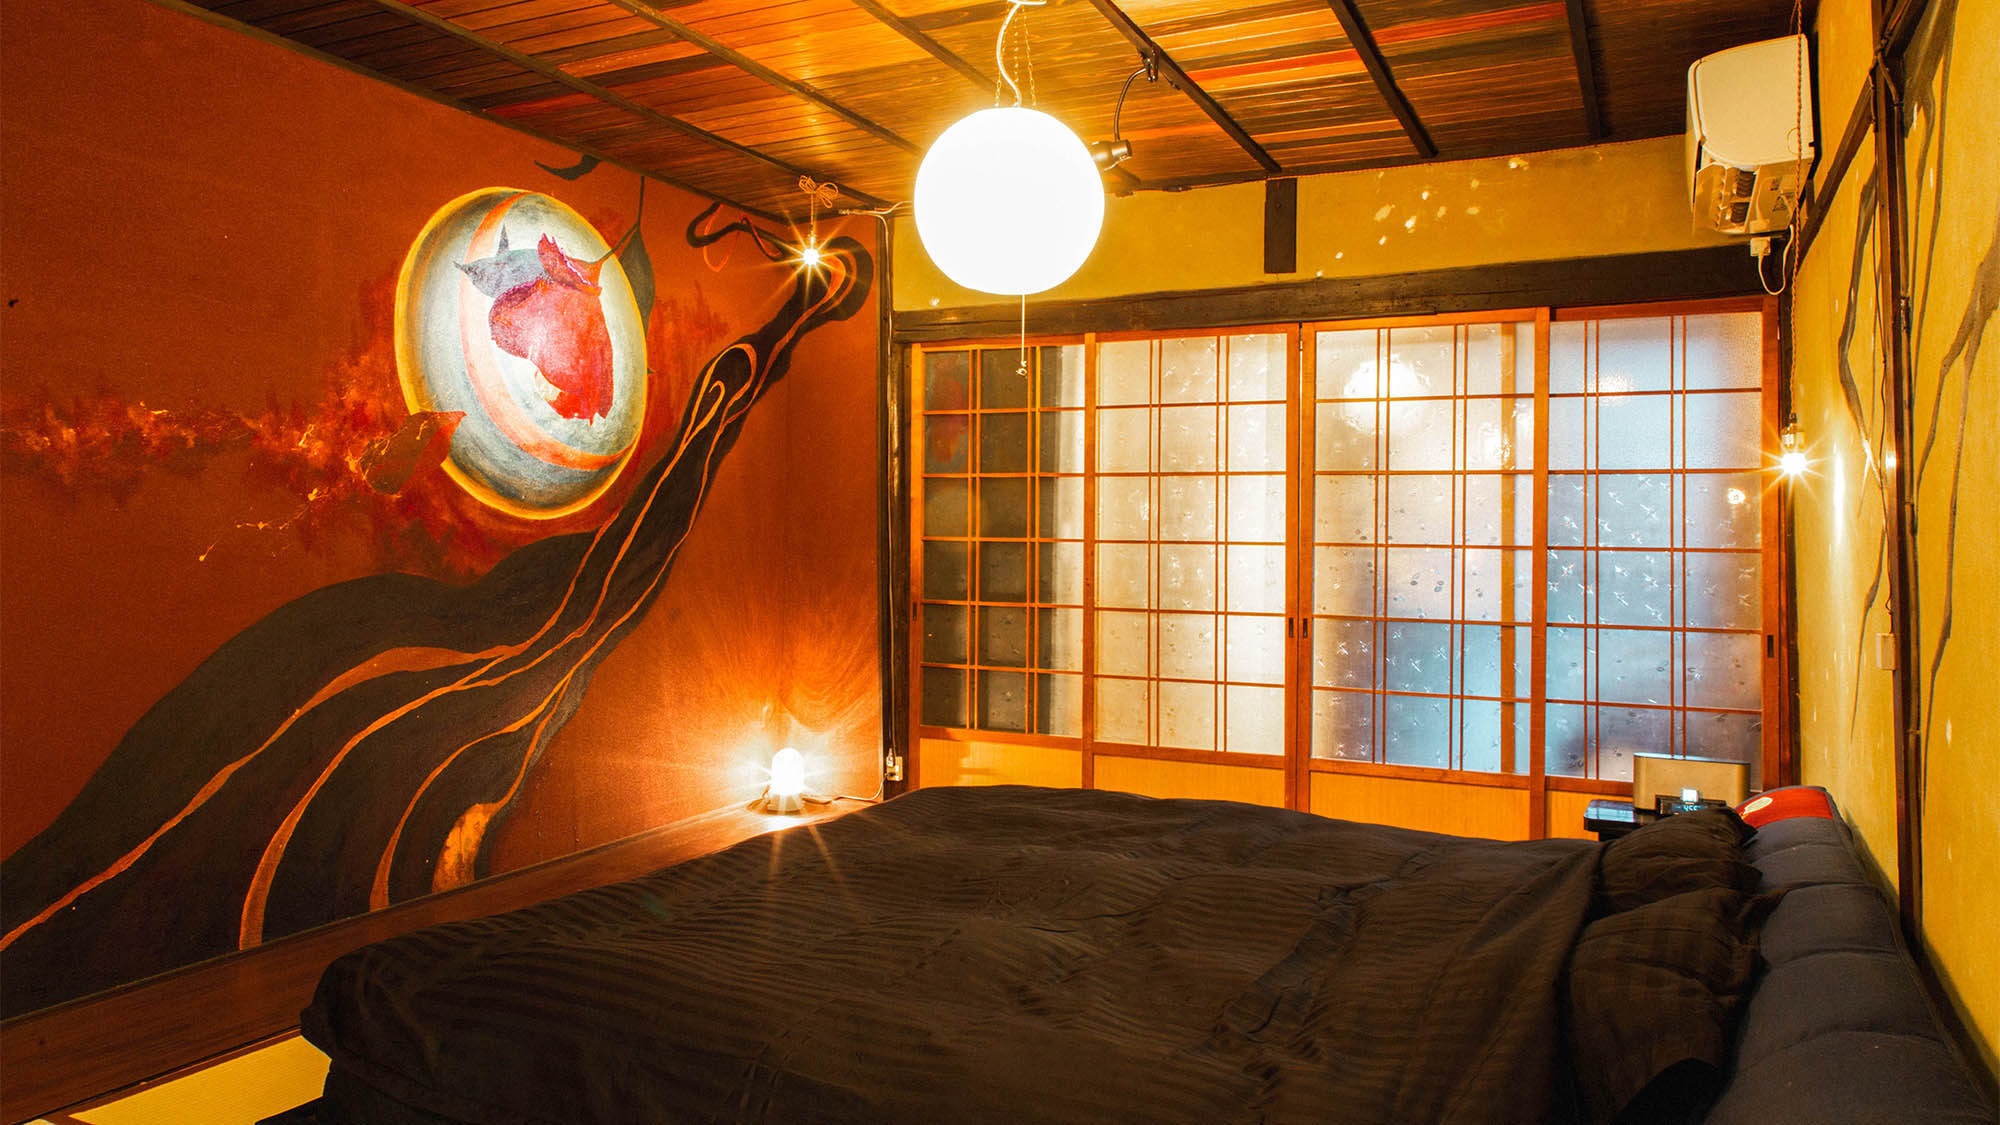 ・京都ローカルアーティストによる壁画や装飾などが特徴的なベッドルームです